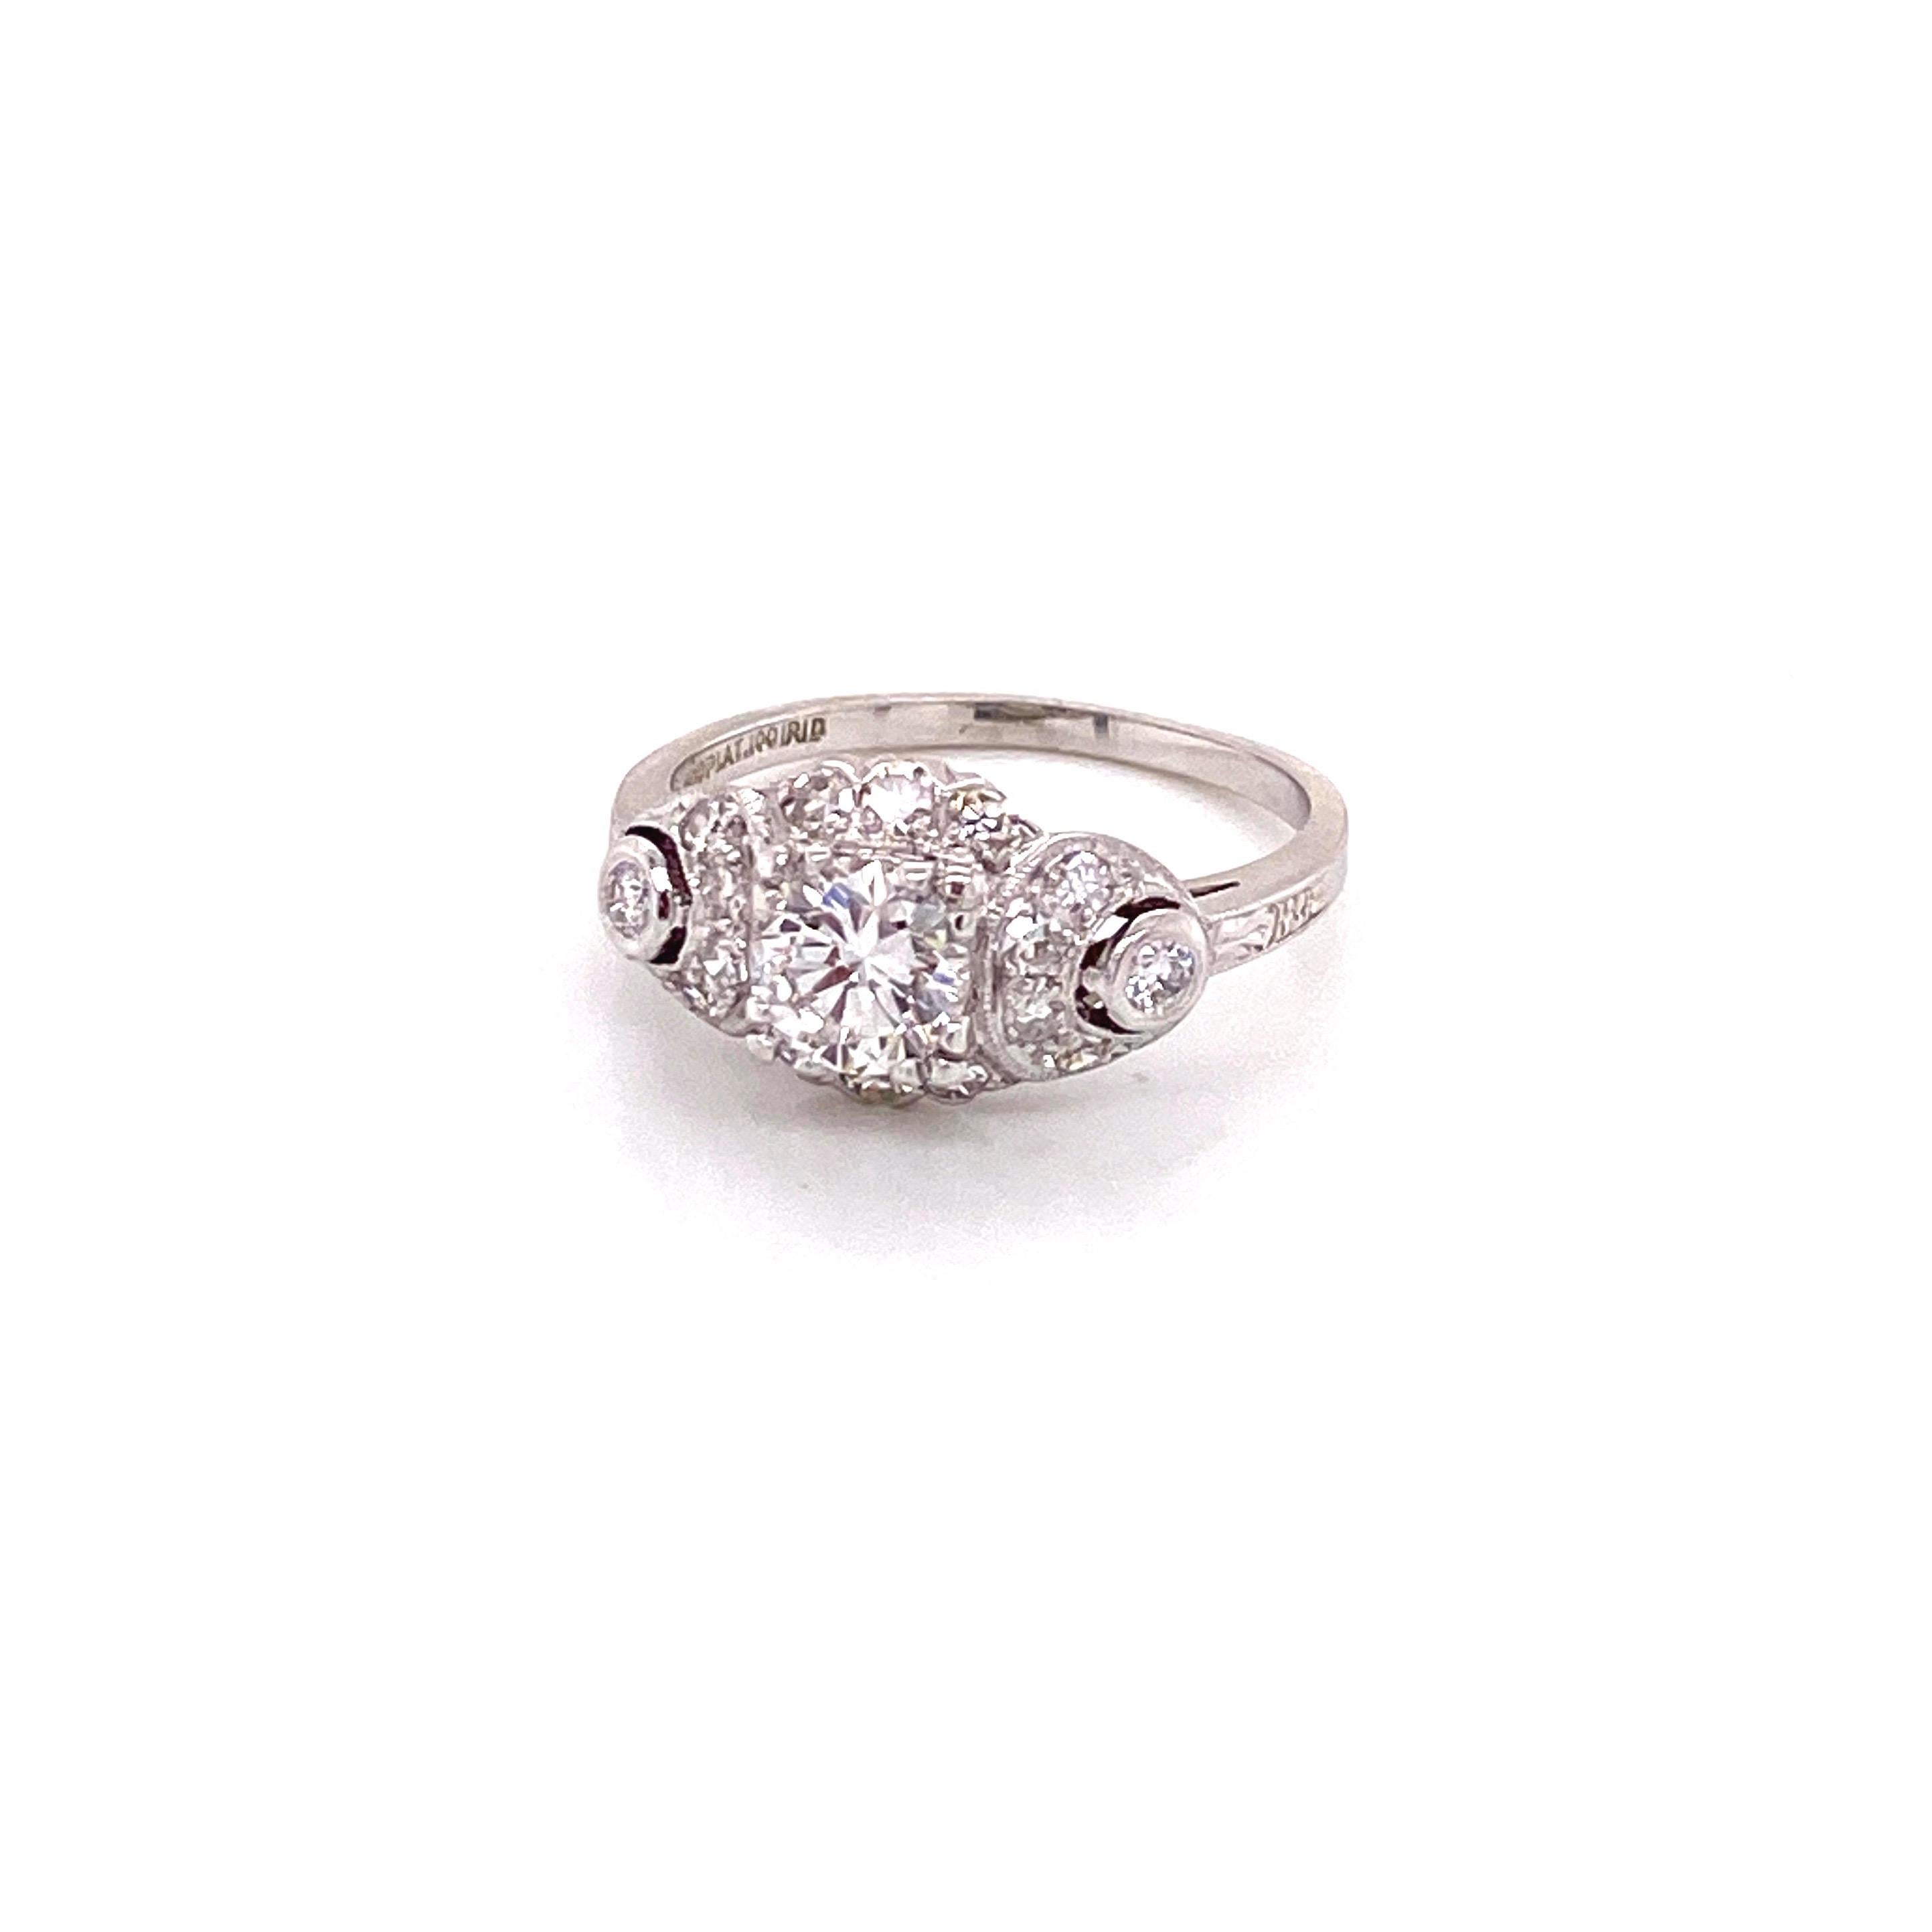 Vintage Platin Art Deco Diamantring mit Diamant Halbmonde Akzente. Der runde Diamant in der Mitte wiegt 0,63ct und hat die Farbe G und die Reinheit VS2. Der Diamant ist in einer dreifachen Zackenfassung mit 3 Einzelschliff-Diamanten oben und unten